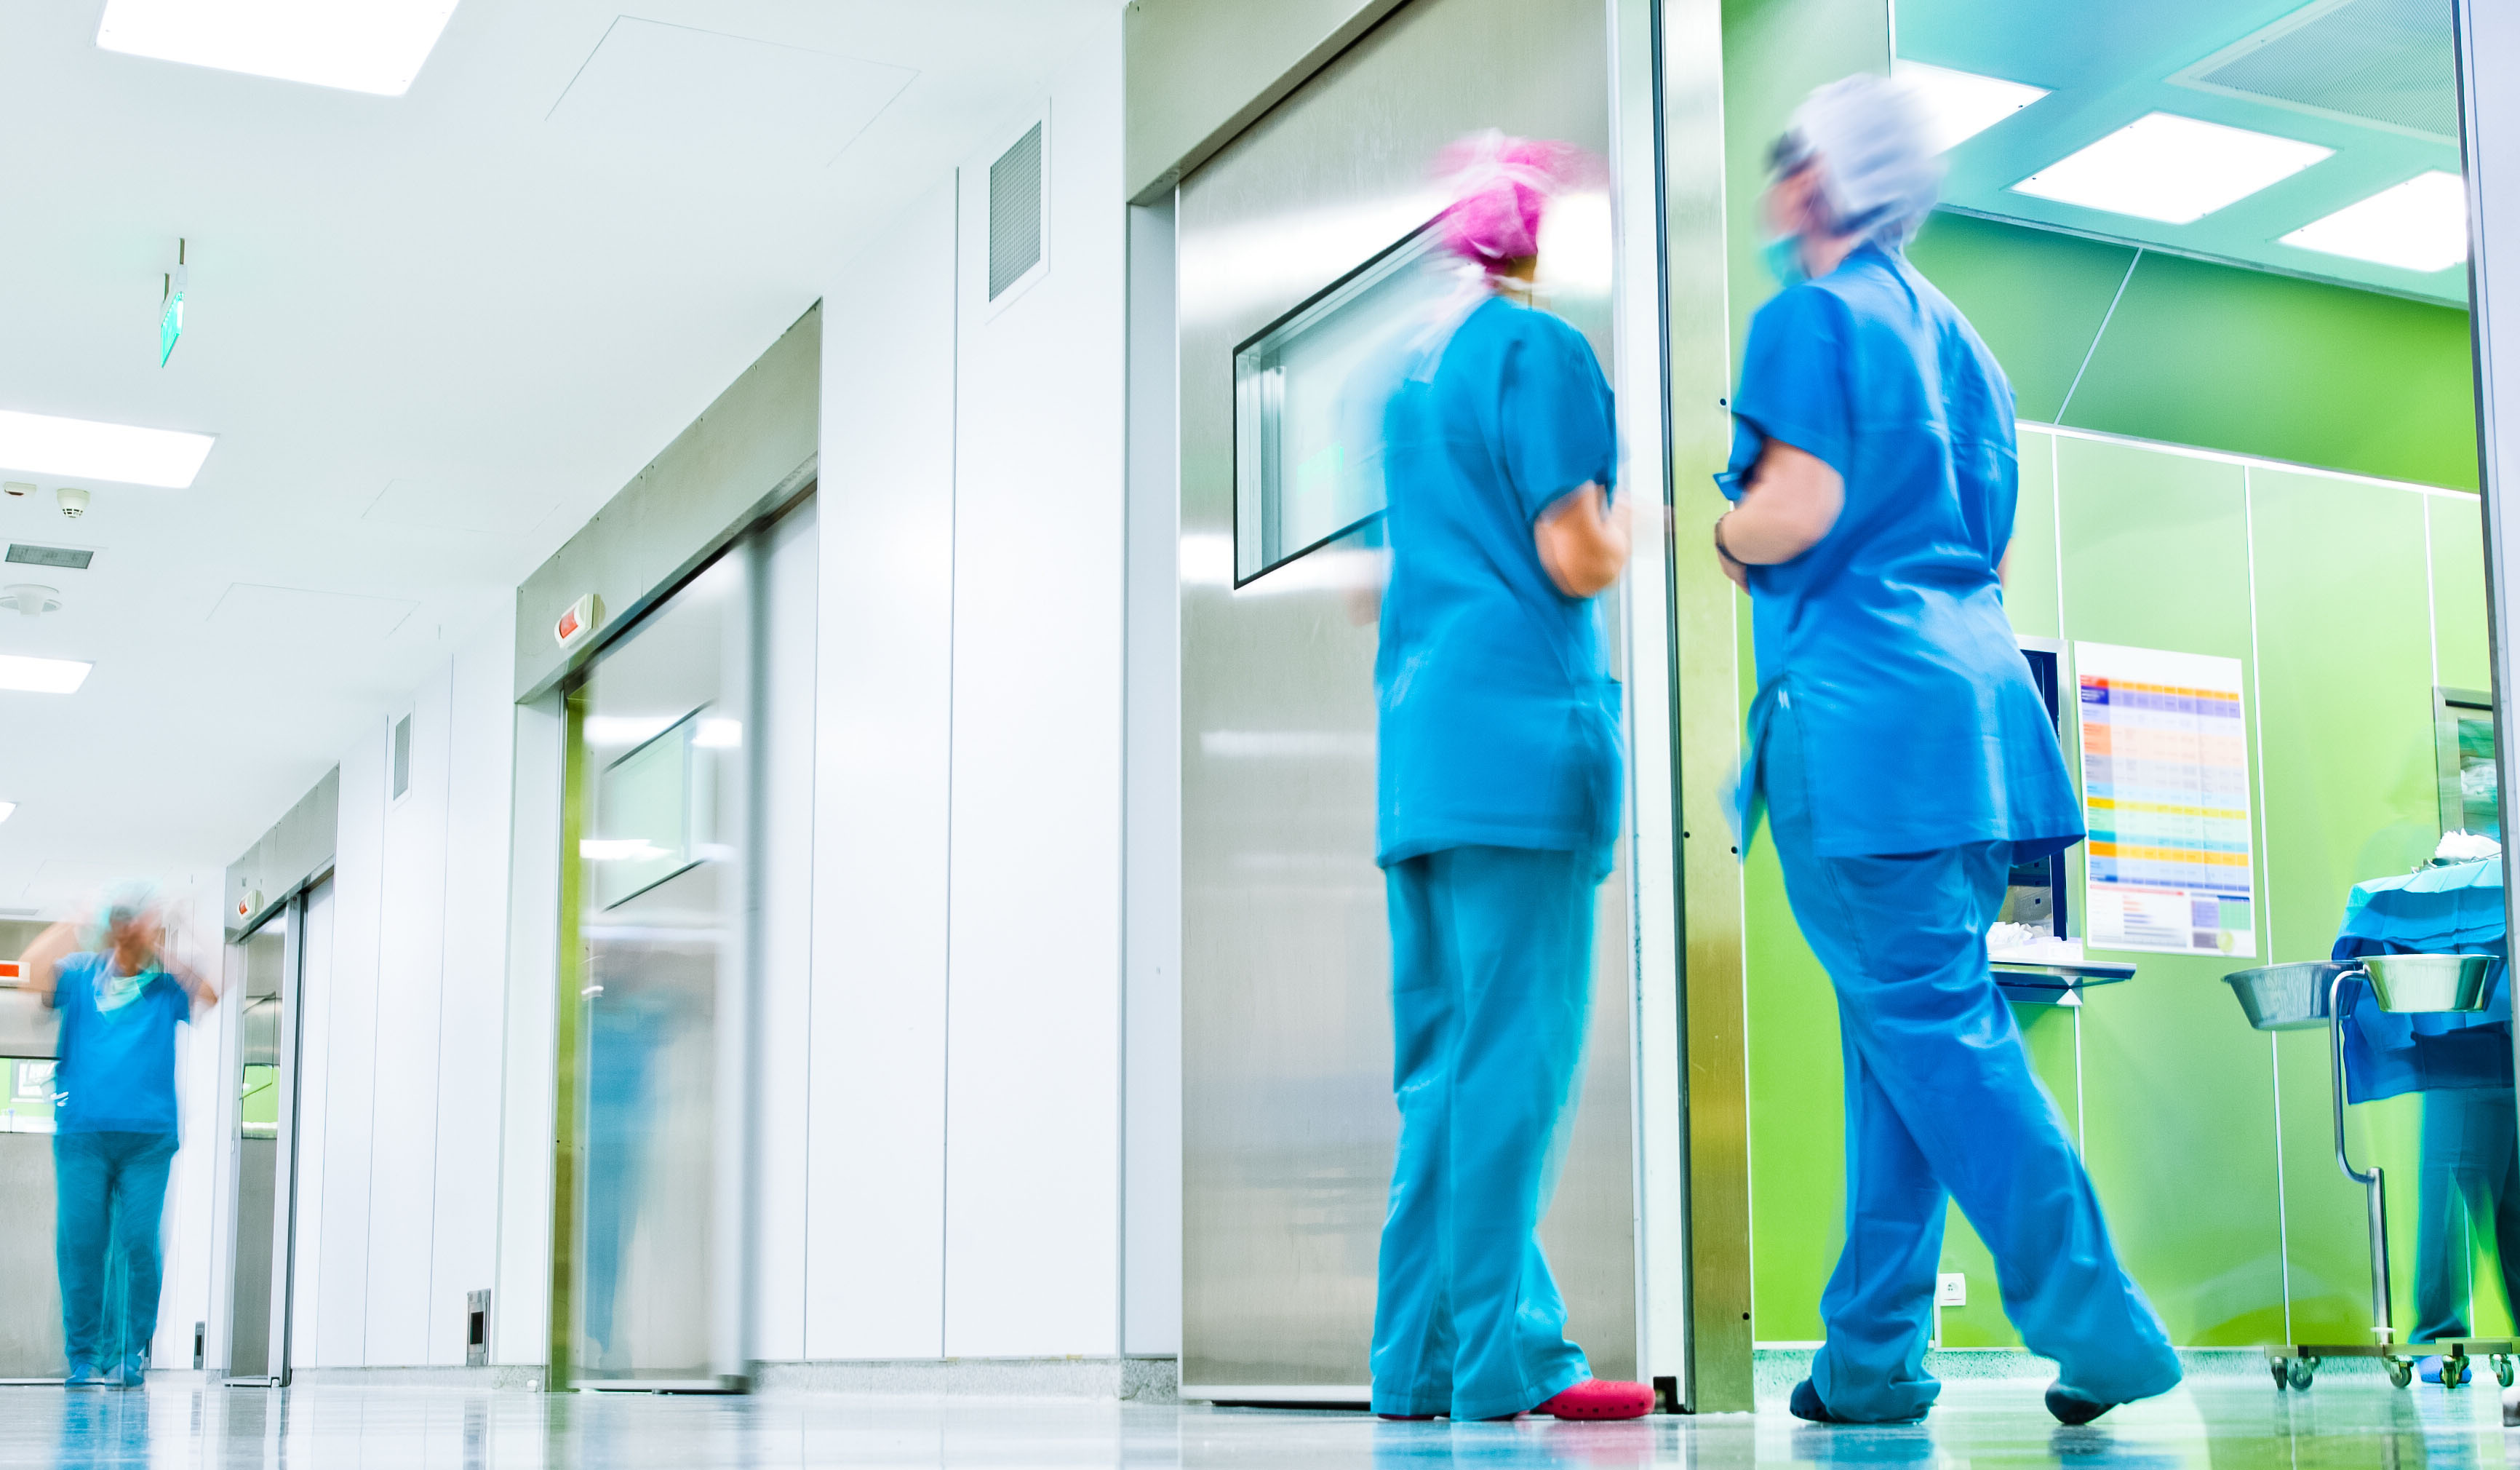 Blurred doctors surgery corridor